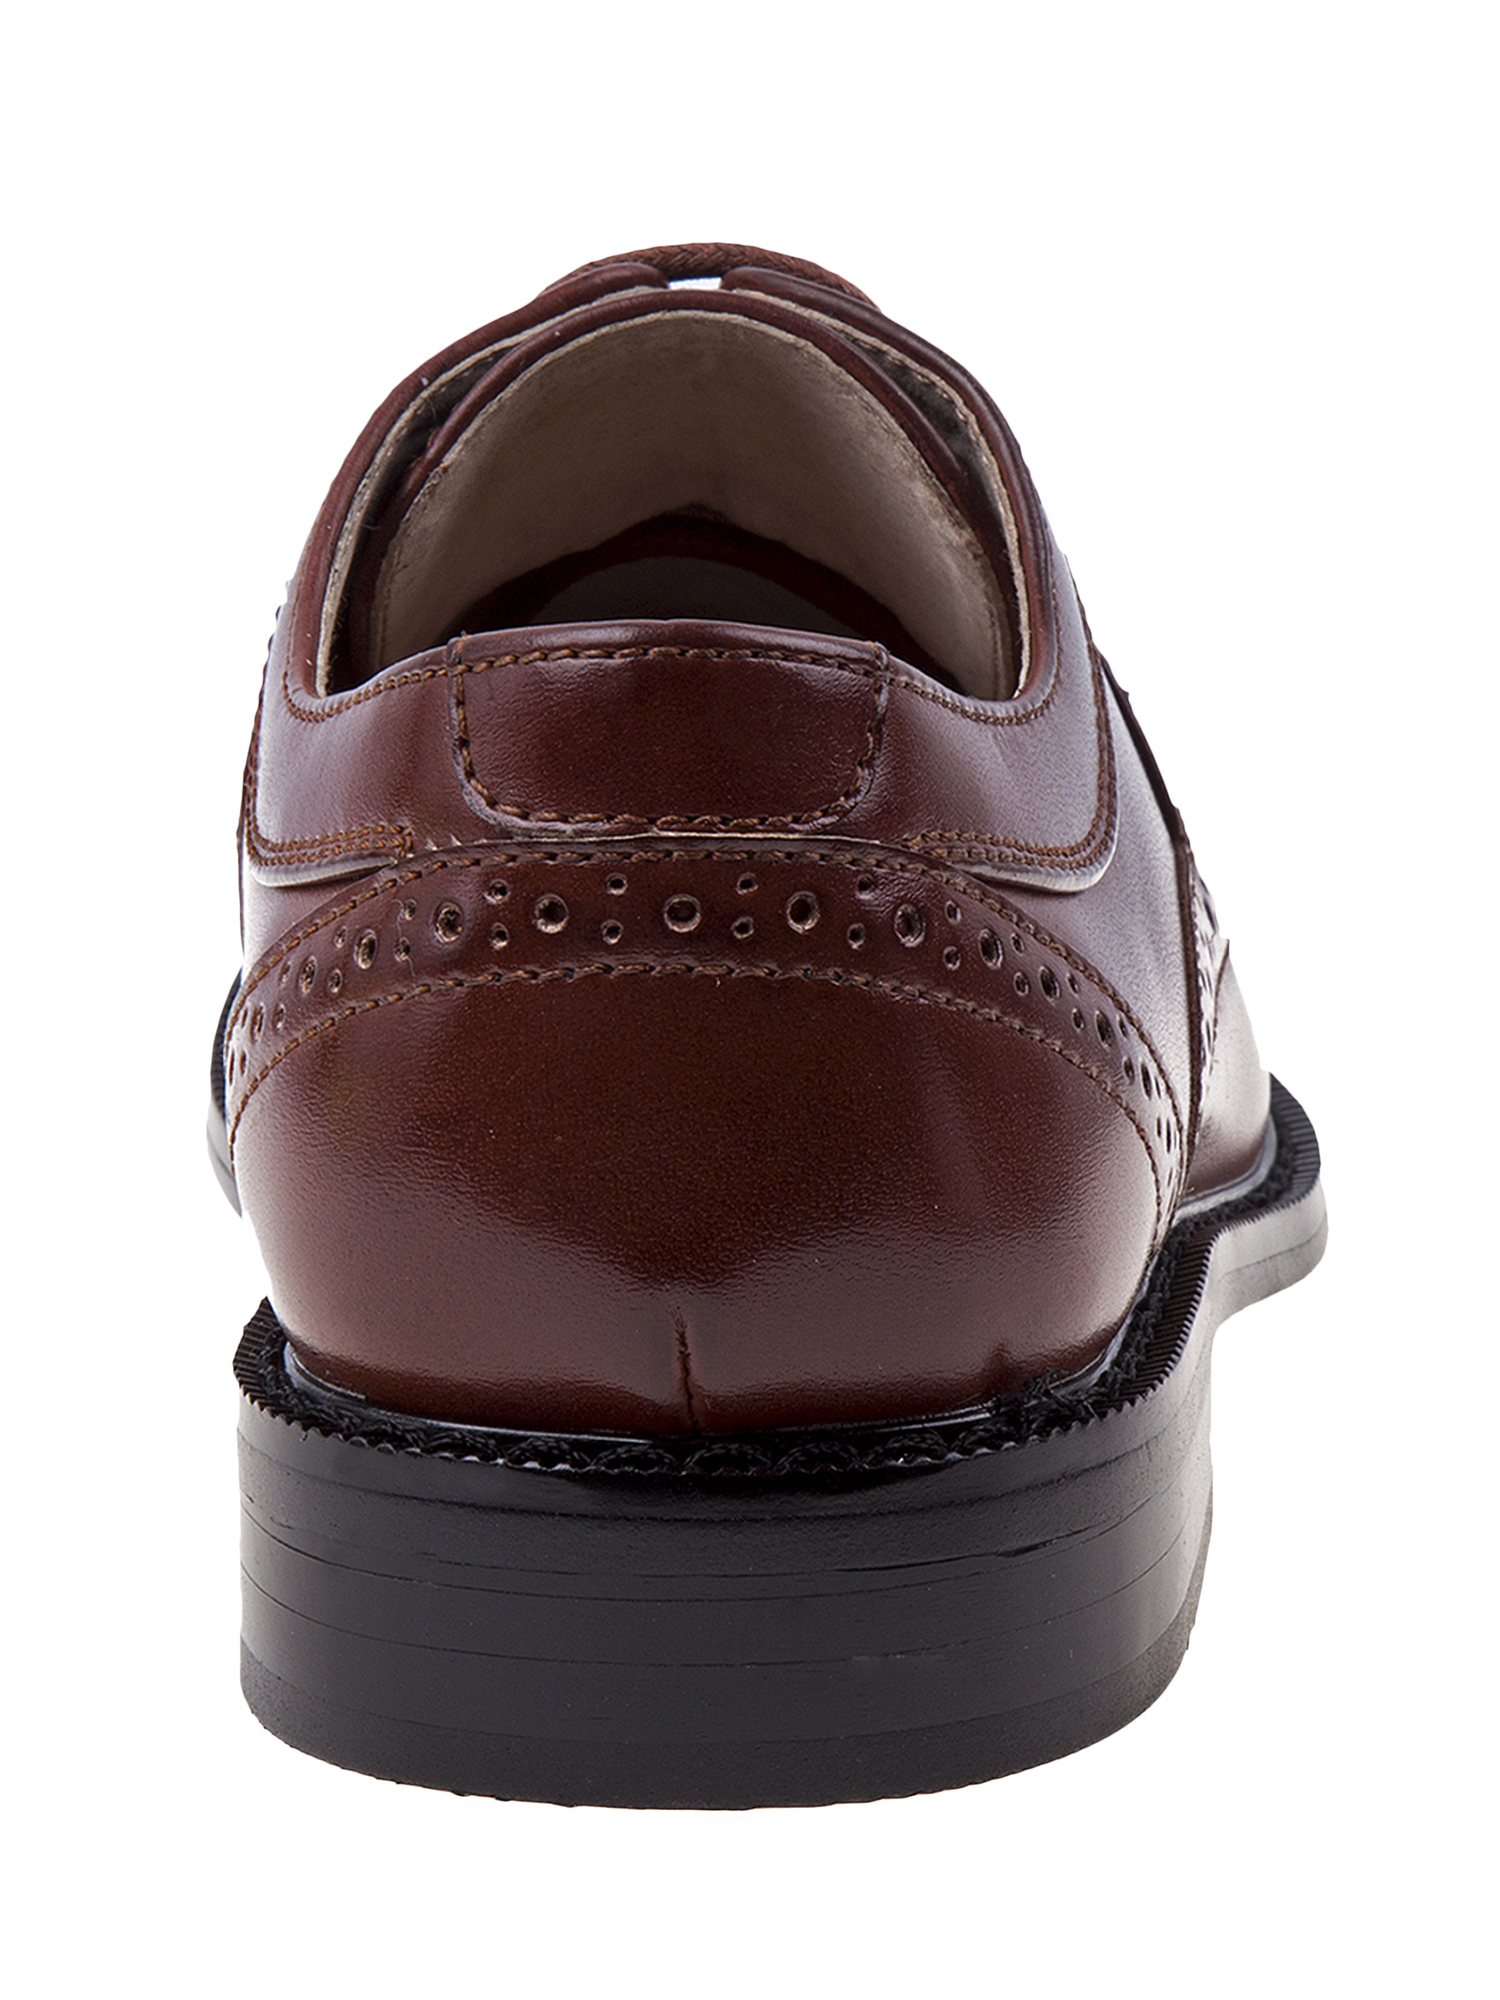 Joseph Allen Boys' Dress Shoes - image 2 of 7